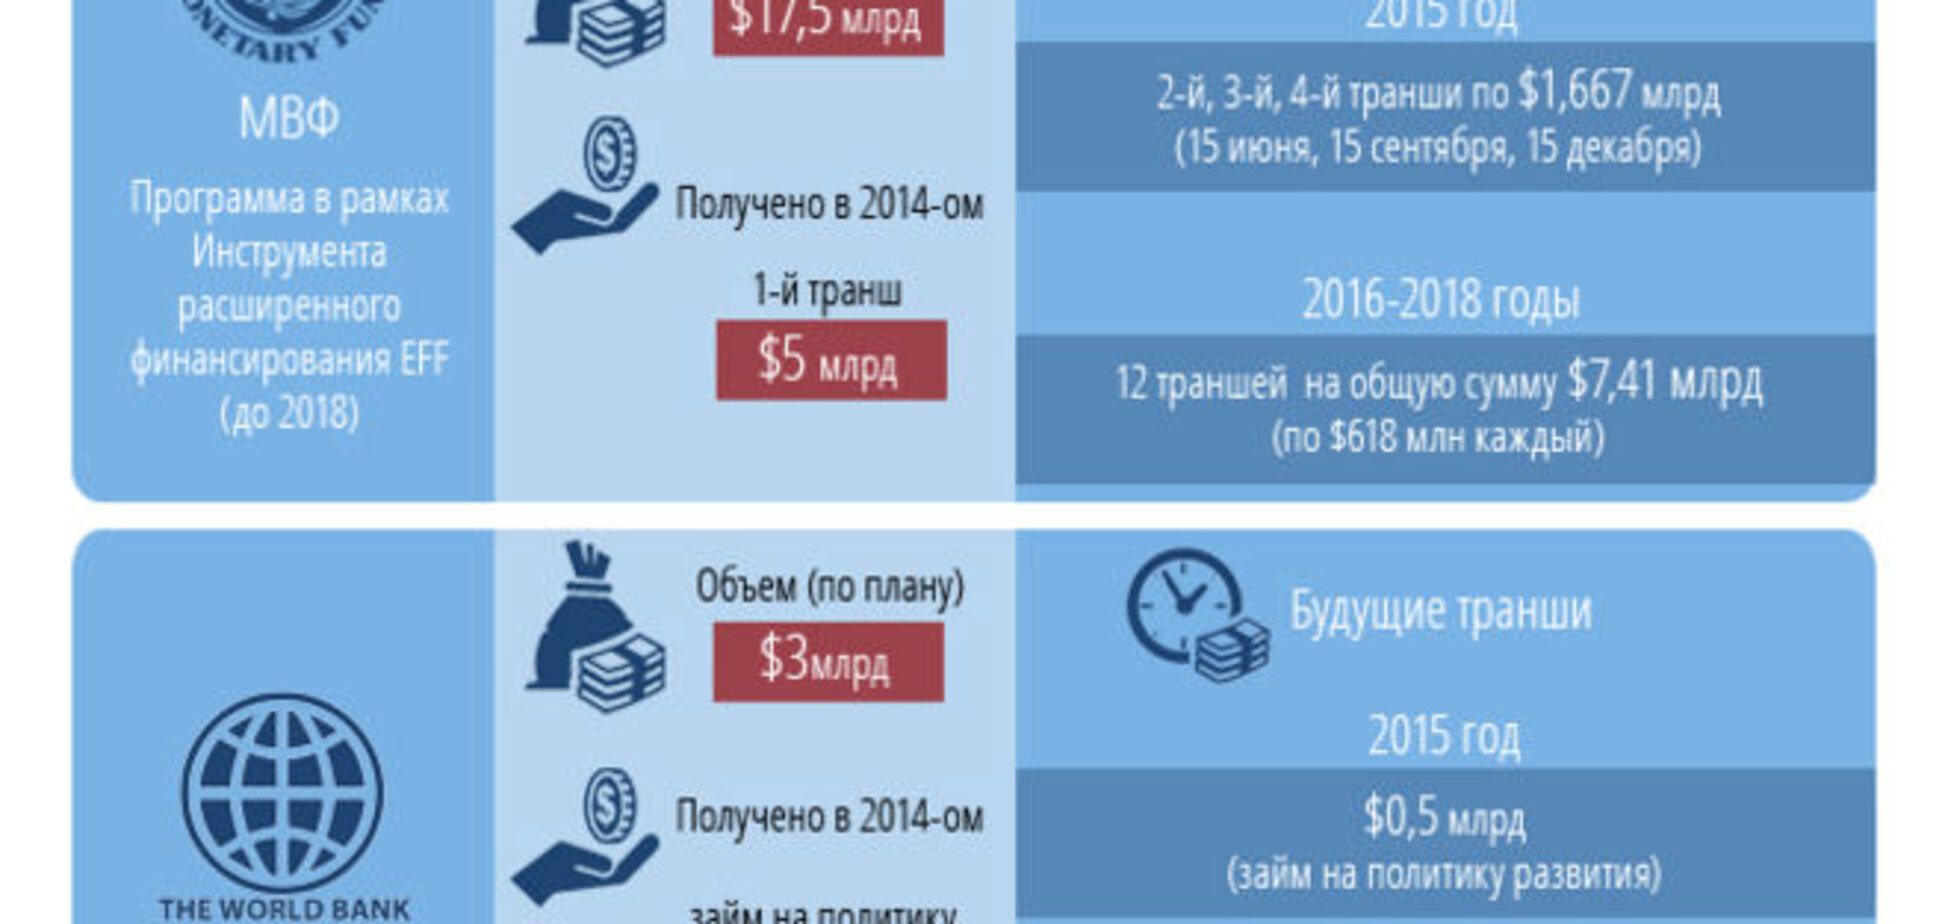 Сколько кредитов получит Украина в 2015 году. Инфографика